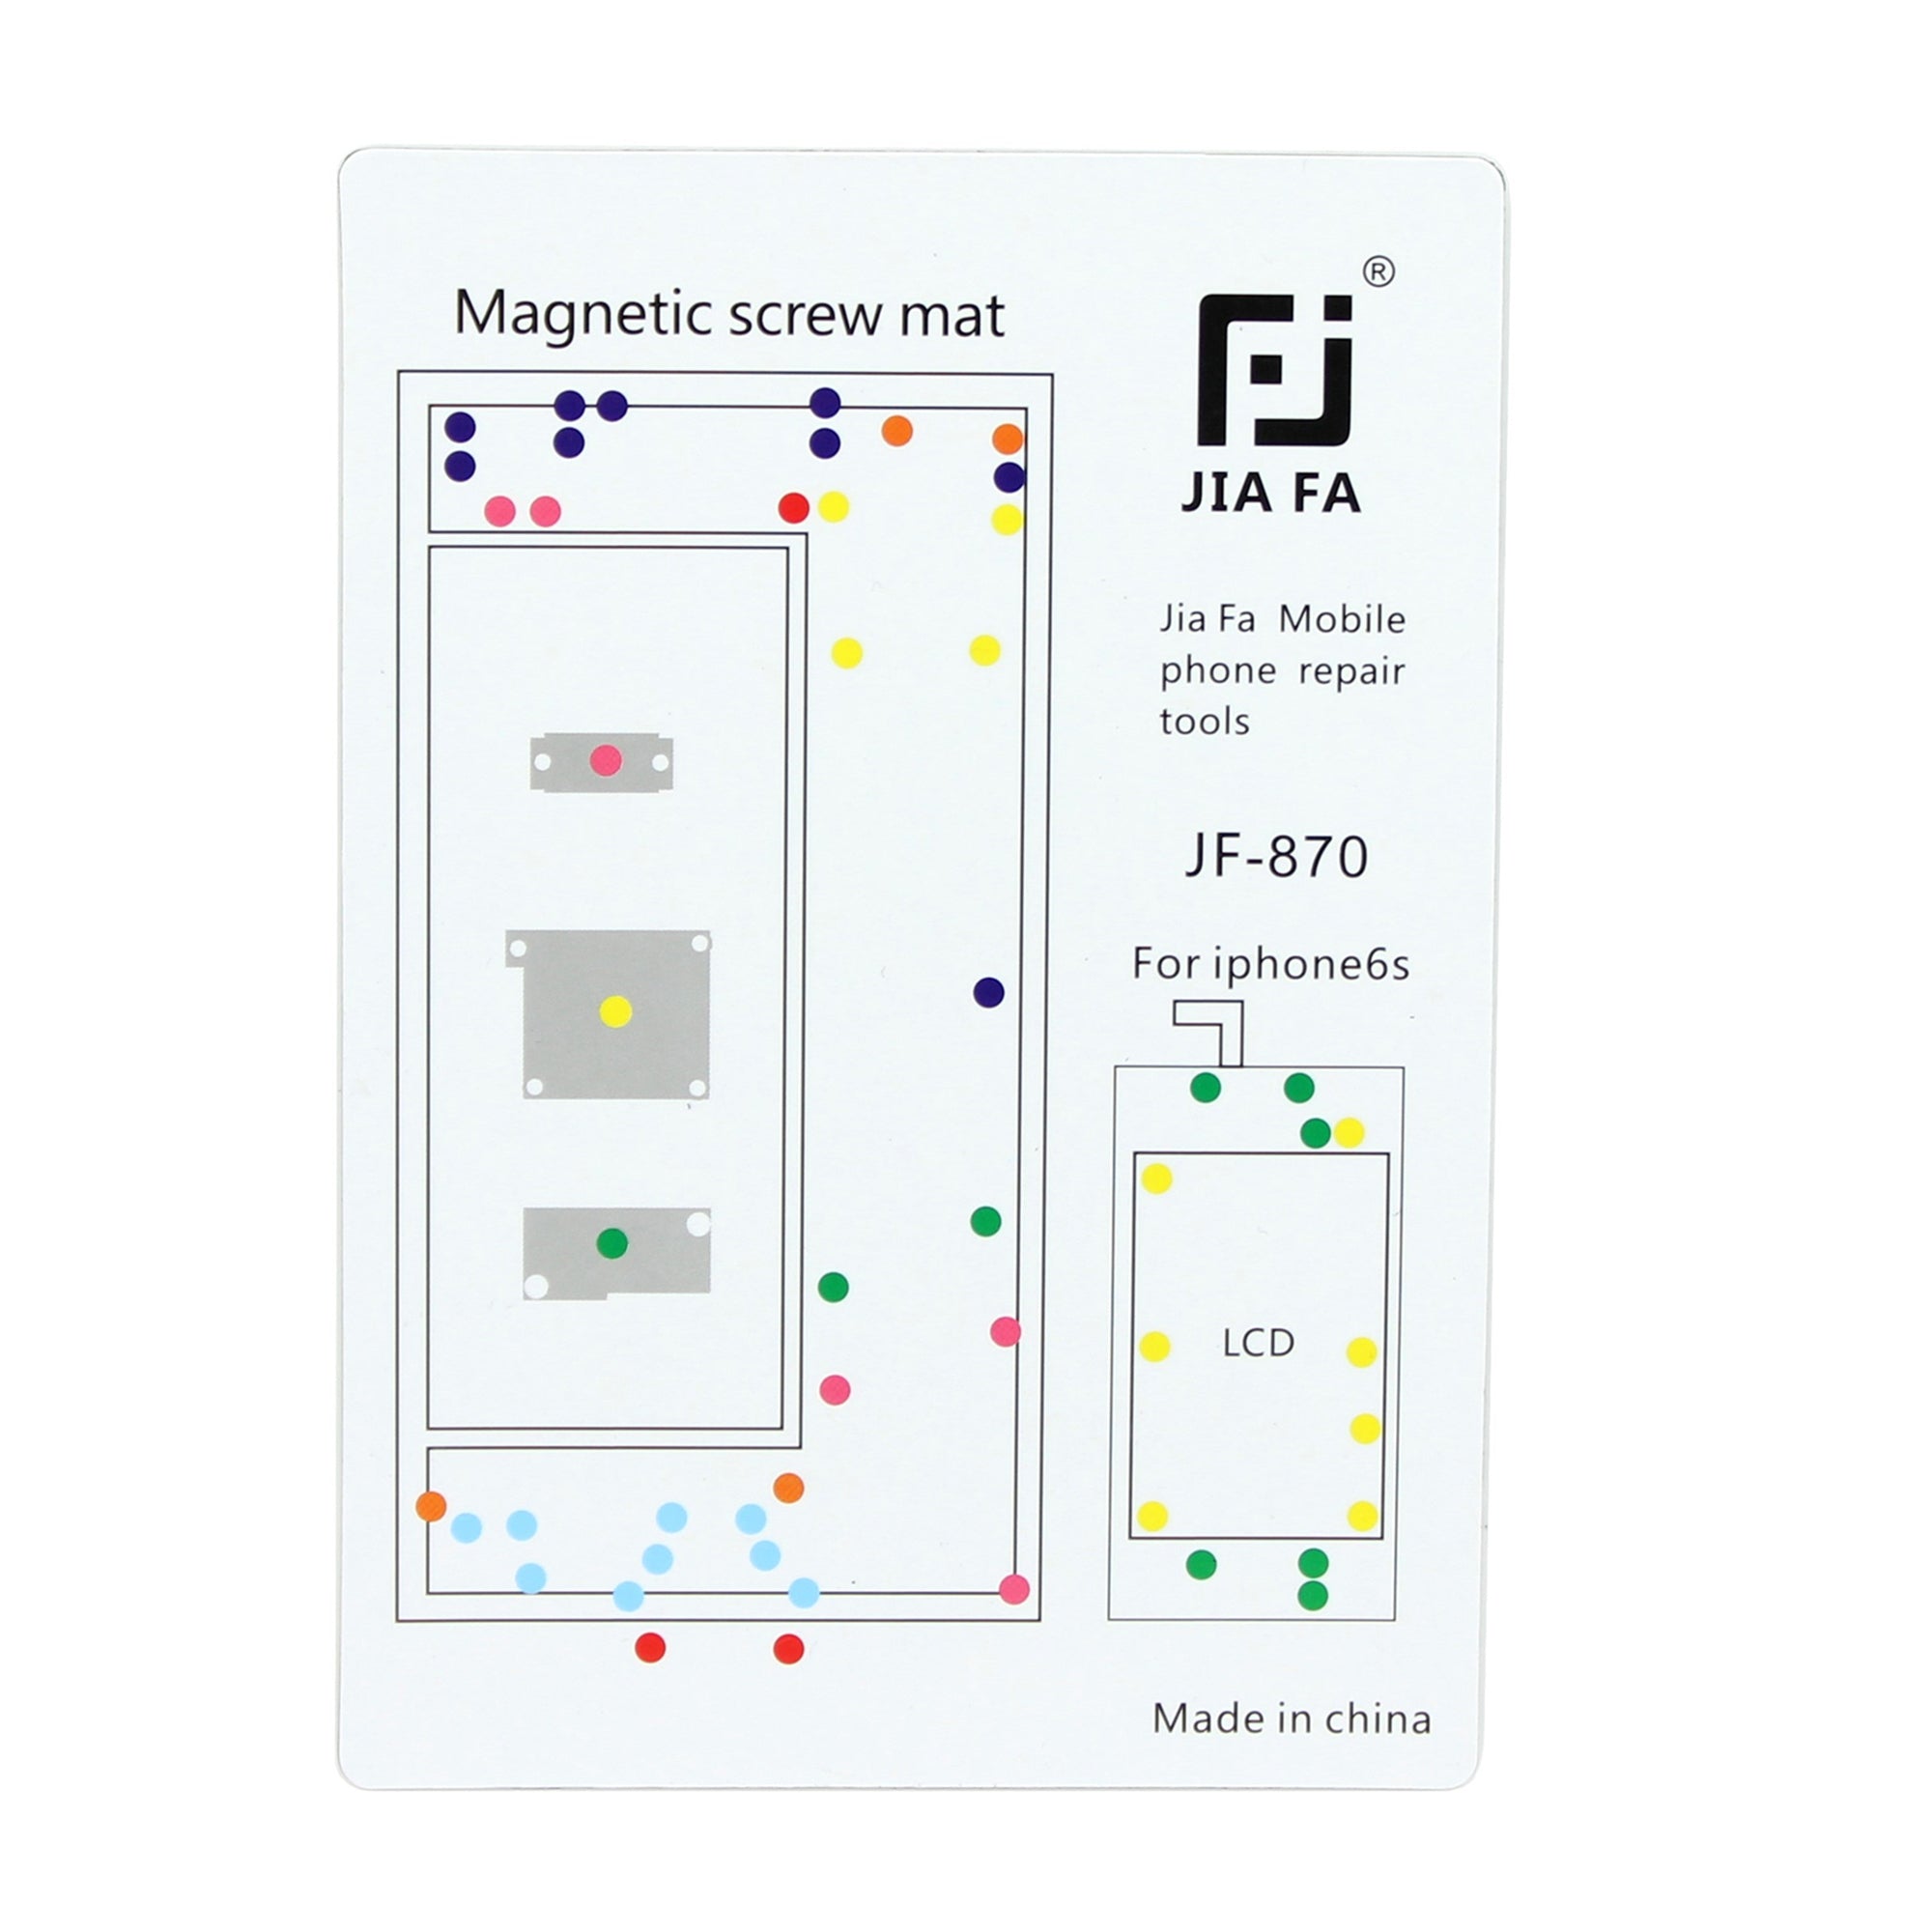 JF-870 Magnetic Screw Mat Phone Repair Tool for iPhone 6s 4.7-inch